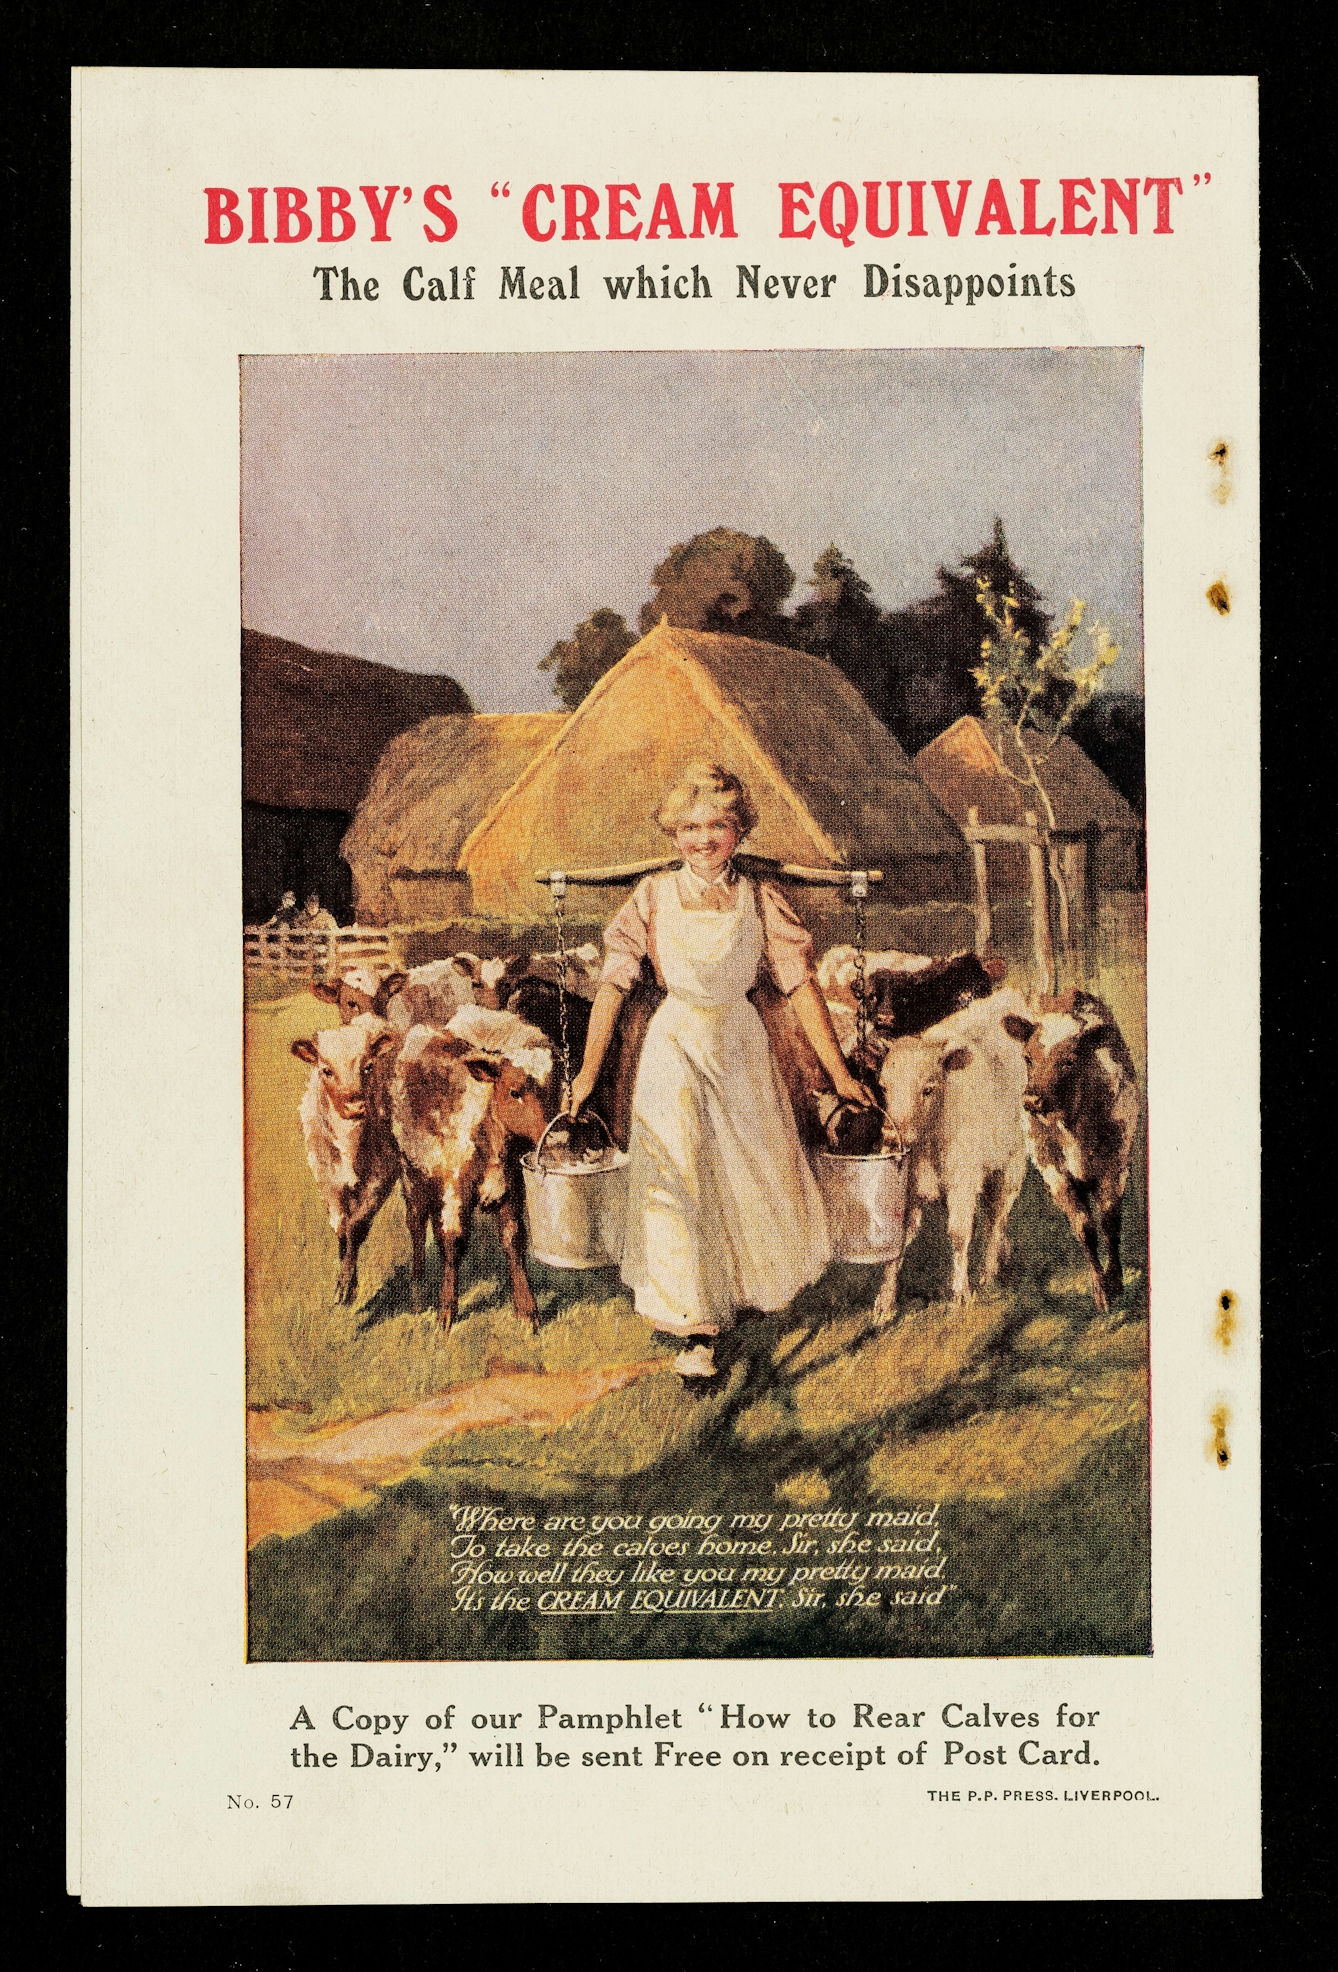 Milk Maiden 1905 - 049 – iVintageImages